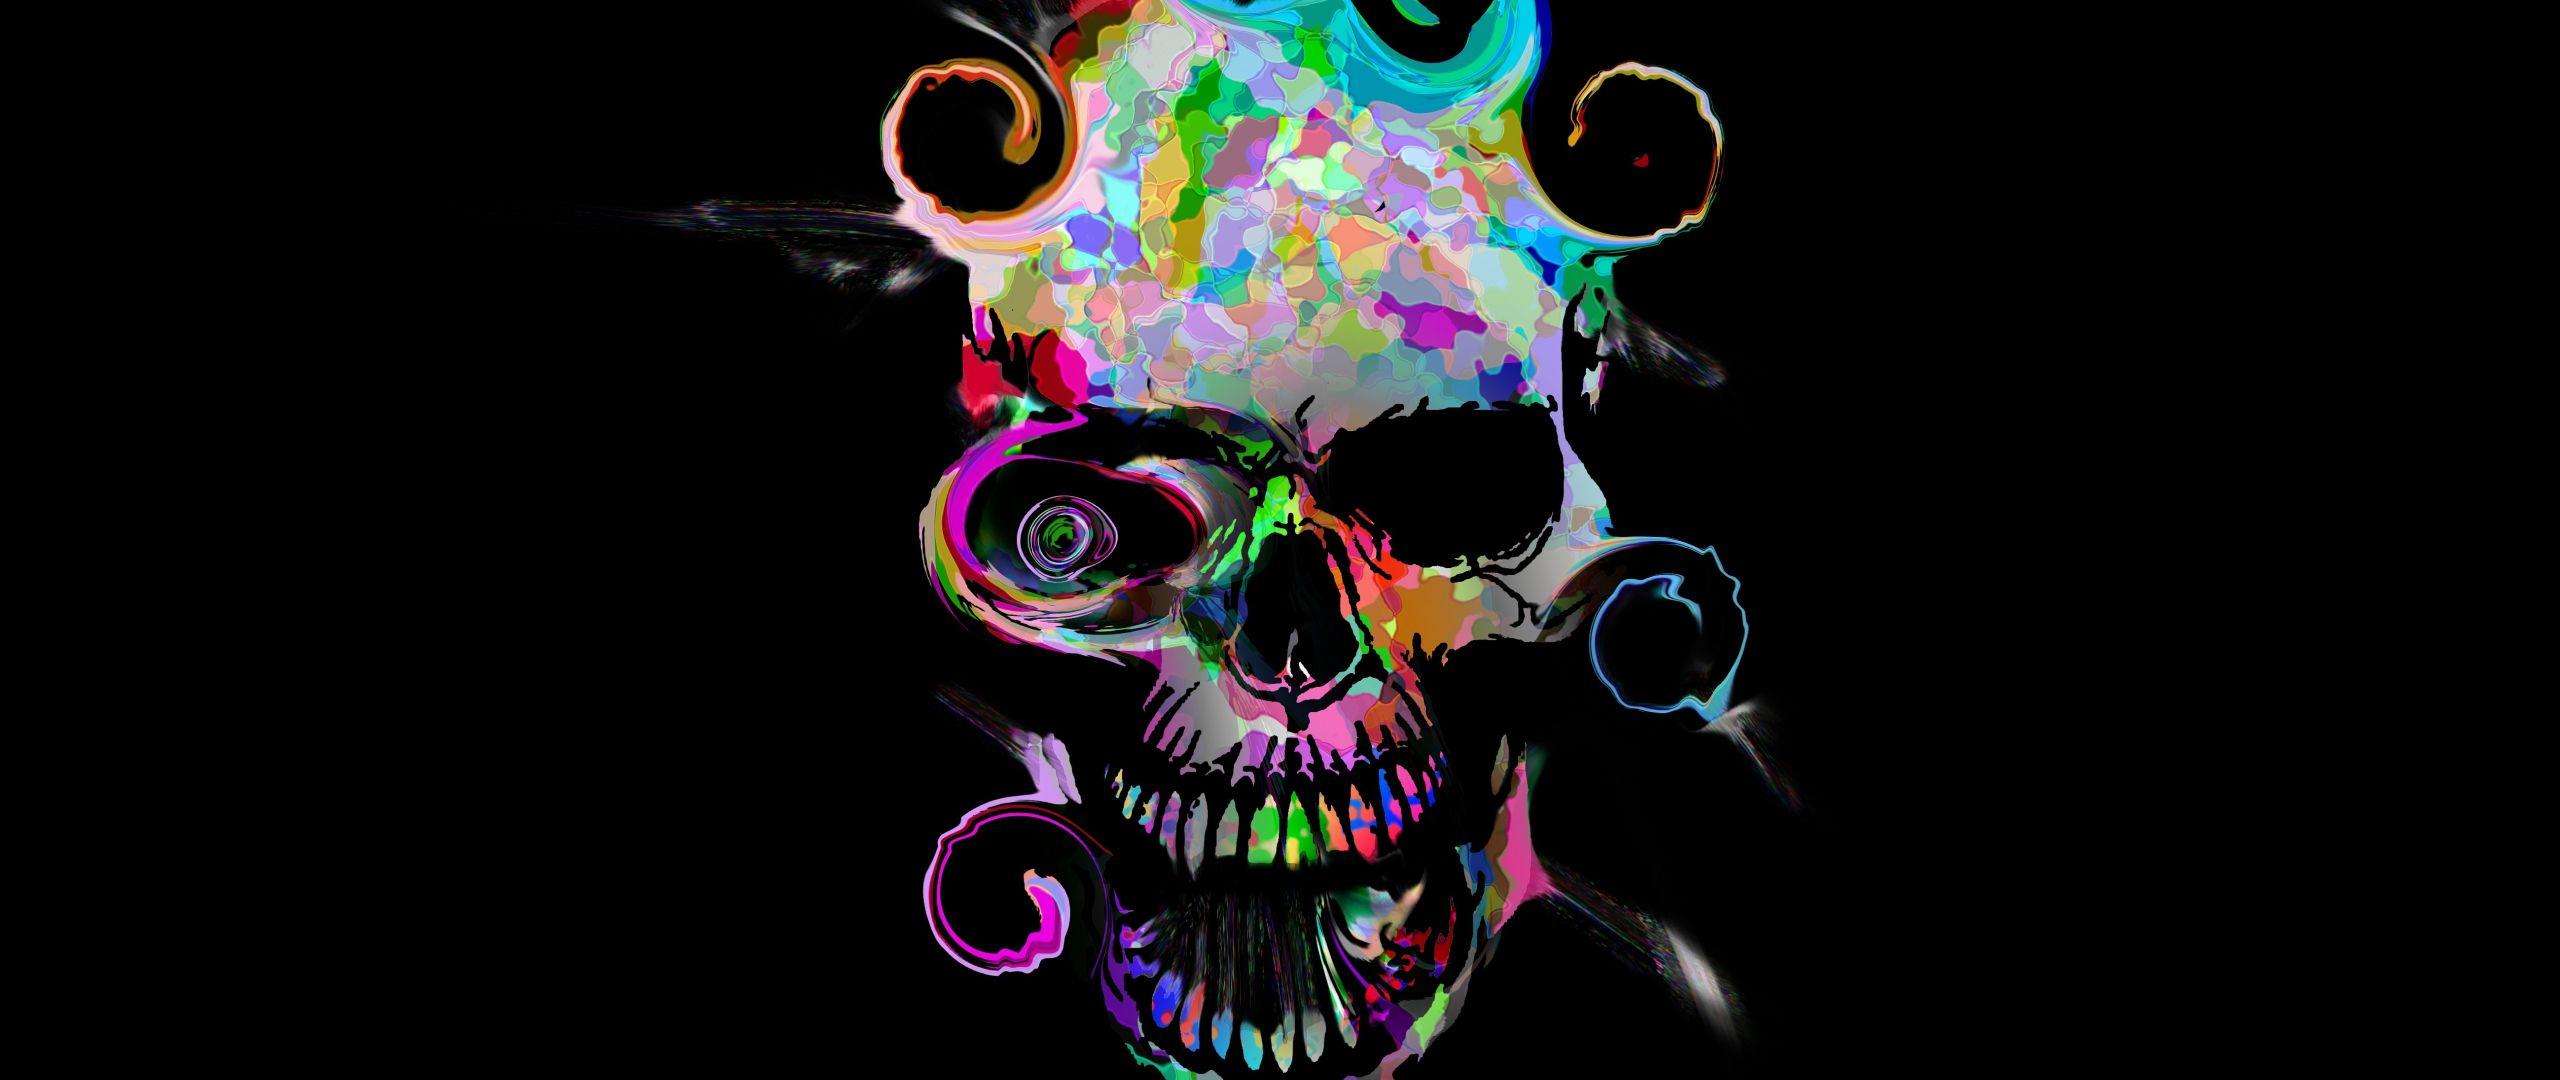 Wallpaper Skeleton Amoled Oled Skull Psychedelic Art Art Background   Download Free Image